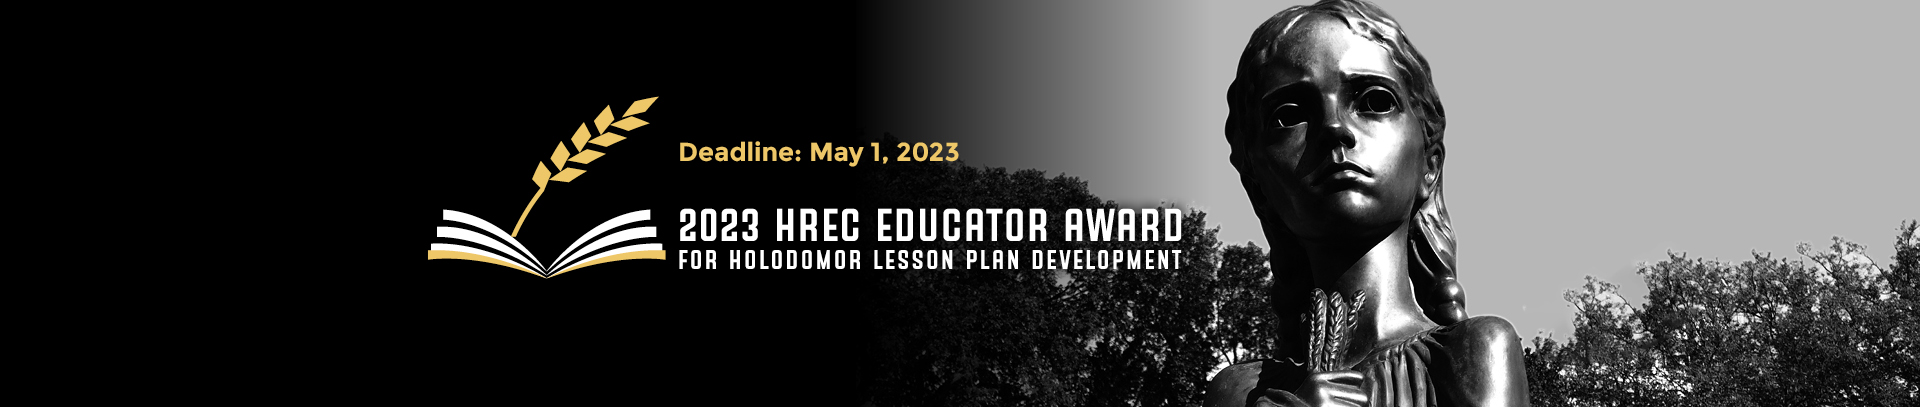 2023 HREC Educator Award for Holodomor Lesson Plan Development